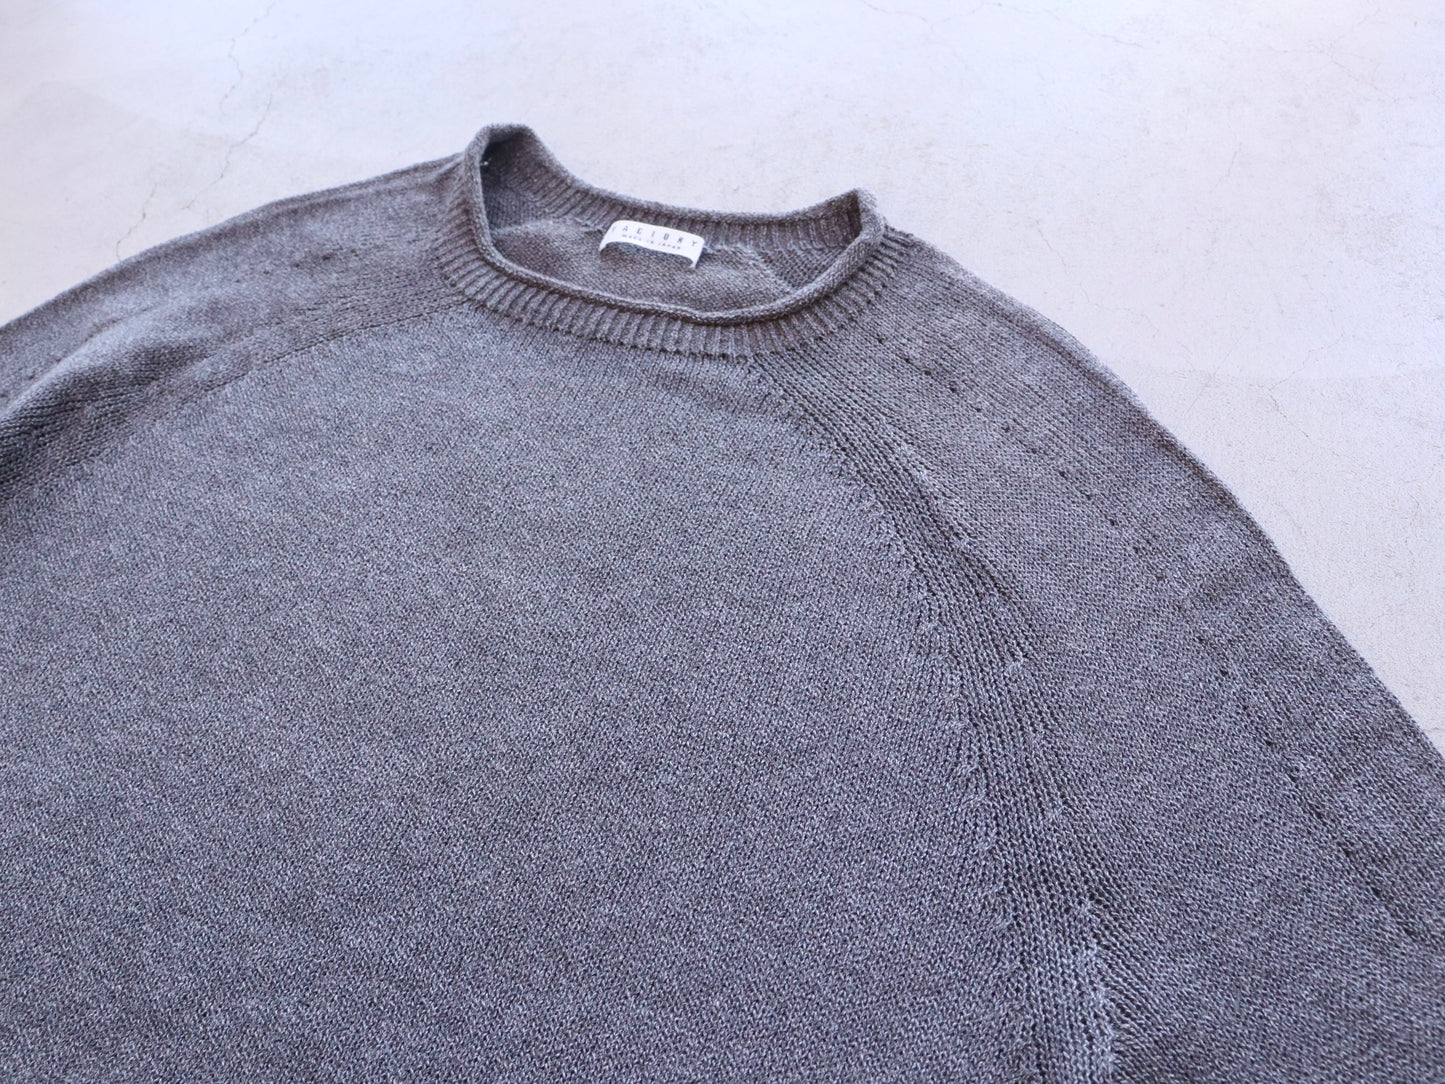 綿強撚糸 カーブセーター